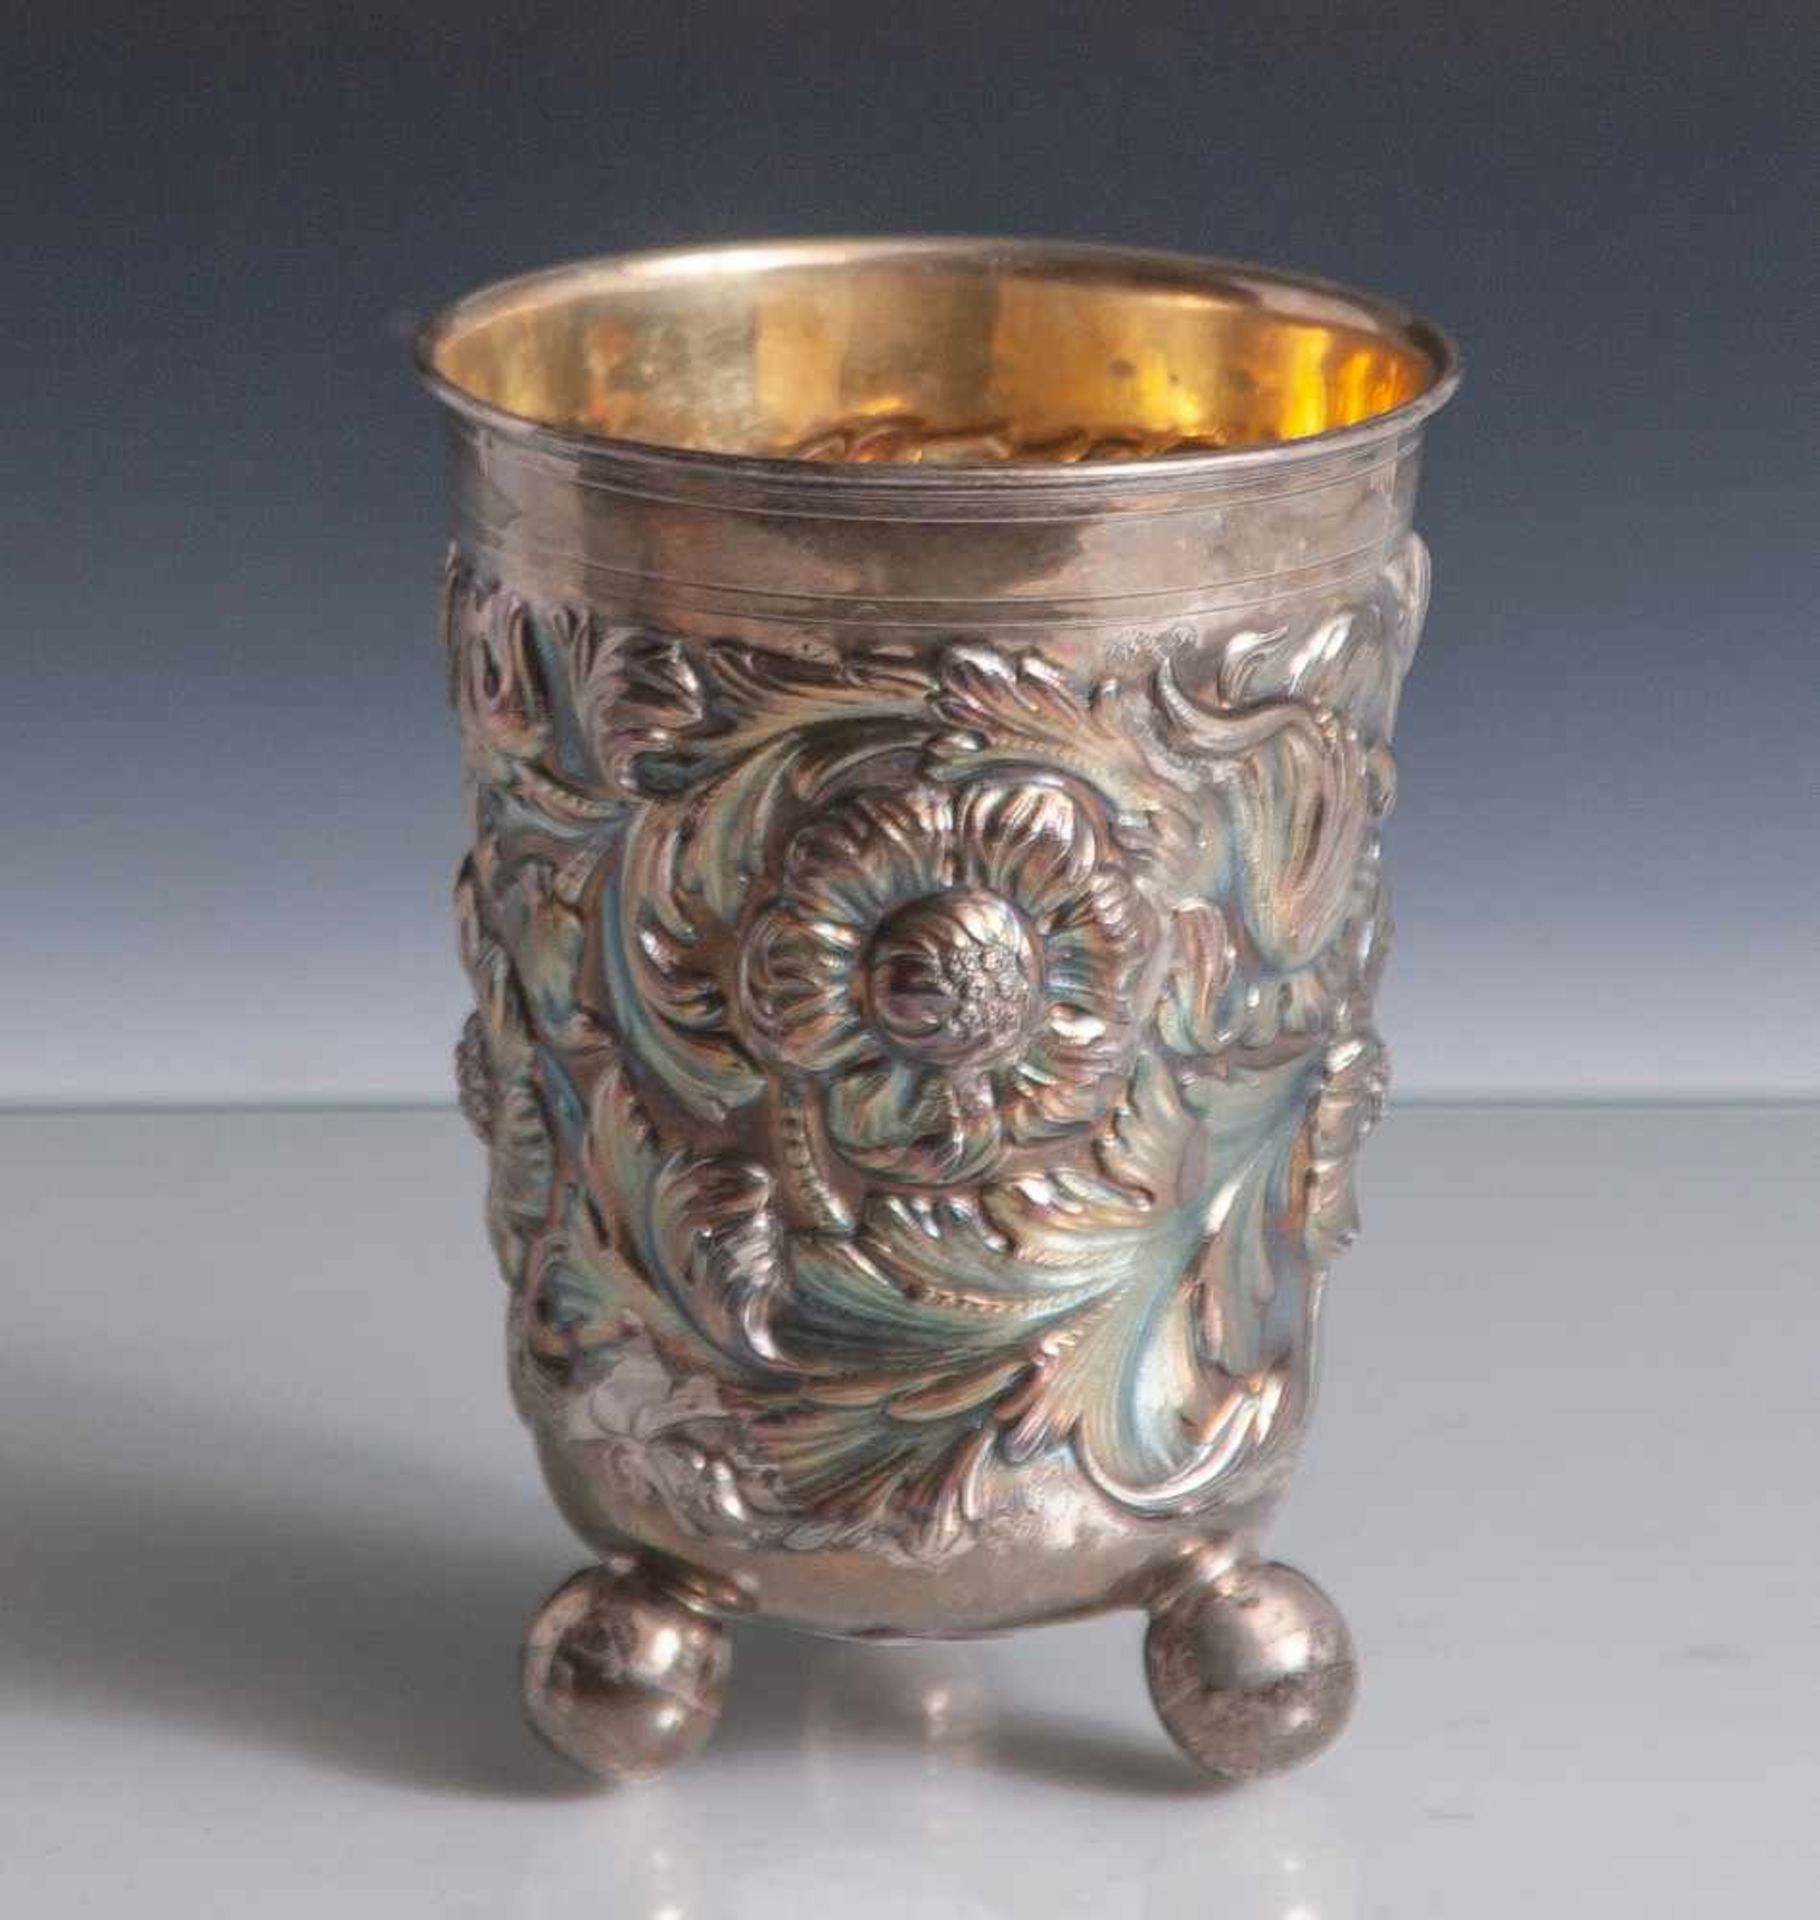 Becher, im Stil des 17. Jahrhunderts, Silber 925, wohl USA, gemarkt: Manufakturmarke (undeutl.),